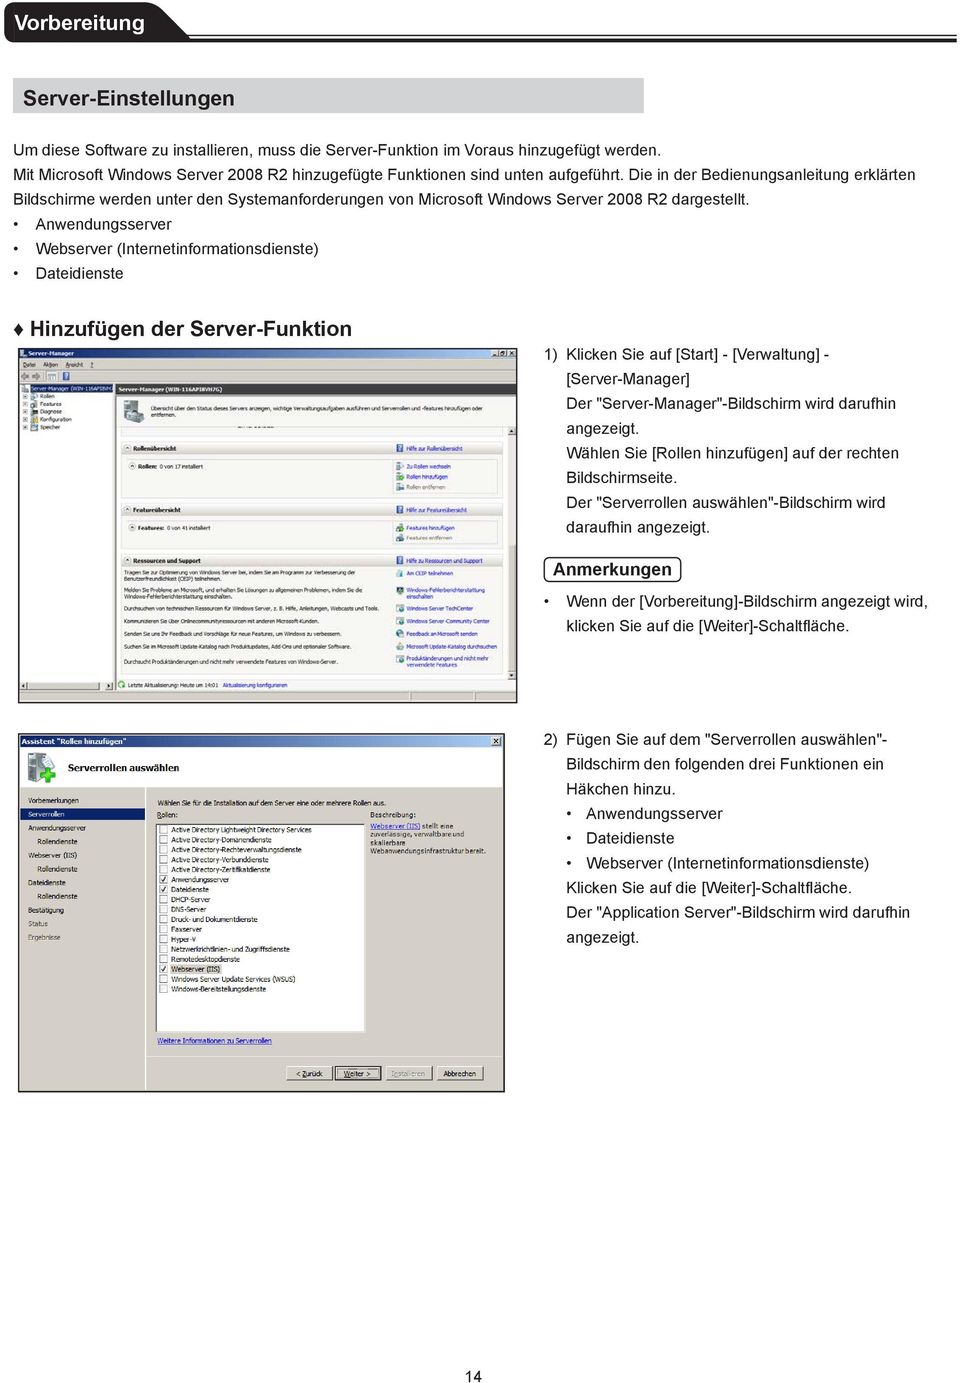 Die in der Bedienungsanleitung erklärten Bildschirme werden unter den Systemanforderungen von Microsoft Windows Server 2008 R2 dargestellt.